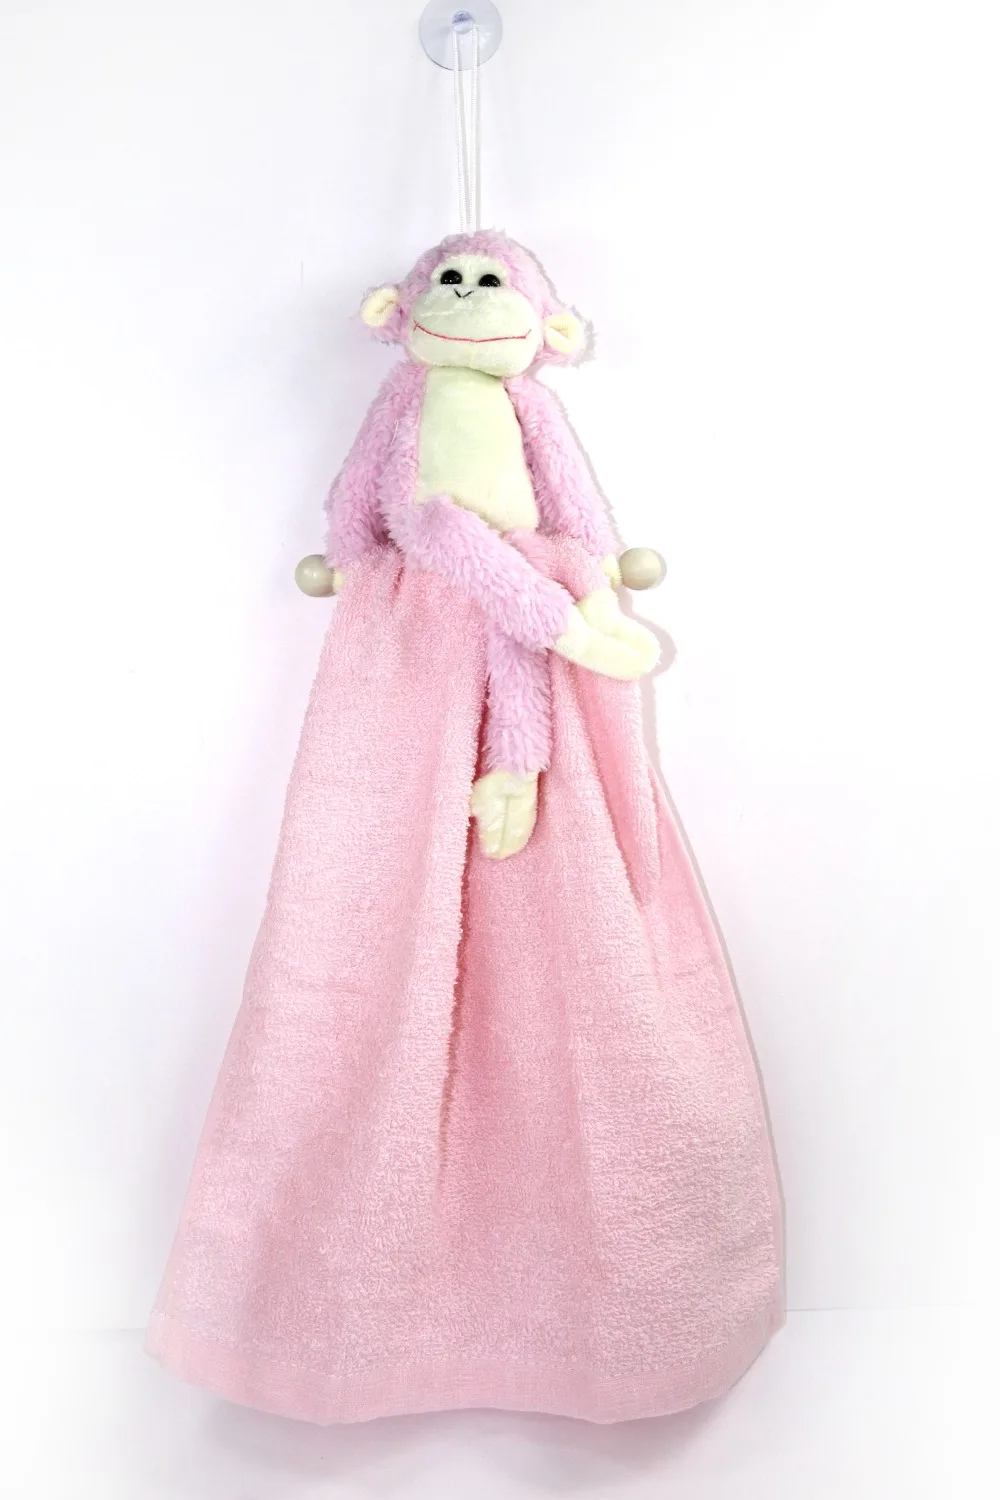 30*70 см розовое полотенце Рождество год женский день хлопок быстросохнущее Мягкое повседневное использование полотенце для лица с обезьянкой